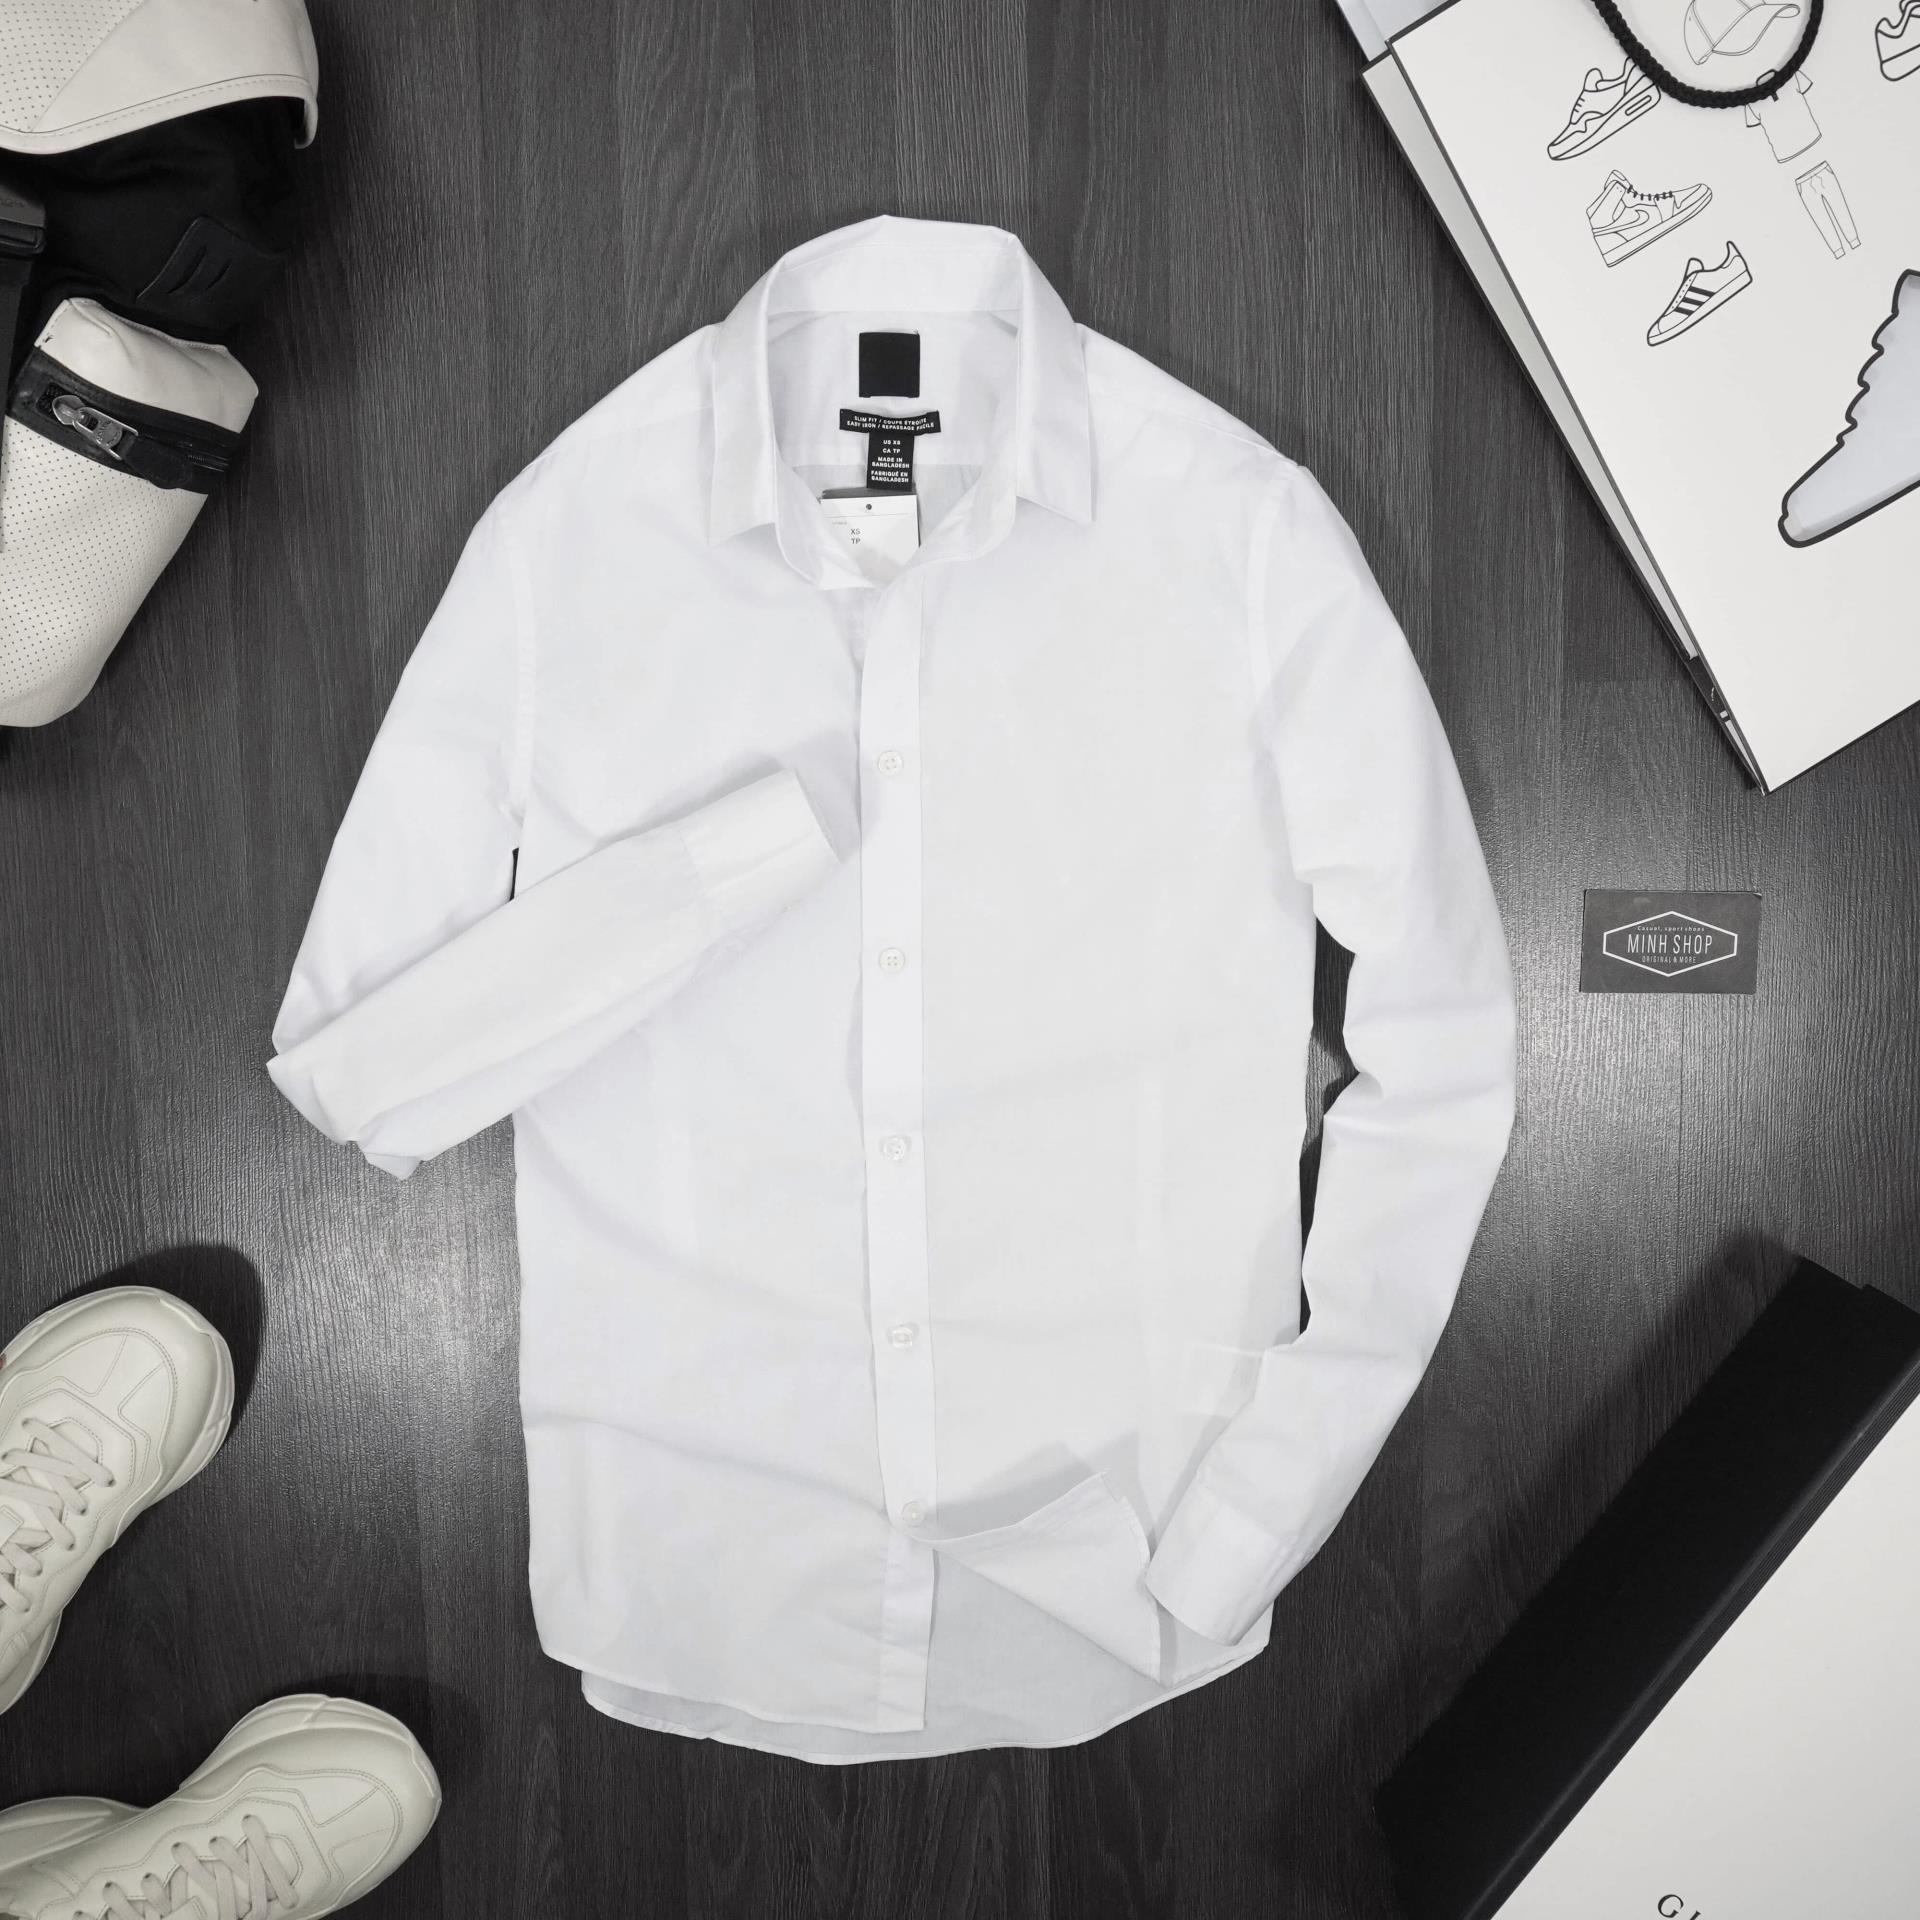 Thiết kế sơ mi trắng H&M 2024 món đồ không thể thiếu trong tủ đồ của bất kì ai yêu thích thời trang. Với màu trắng tinh khôi và kiểu dáng thanh lịch, chiếc áo sẽ giúp bạn trở nên tự tin và quyến rũ. Đến H&M ngay hôm nay để khám phá bộ sưu tập áo sơ mi trắng độc đáo.